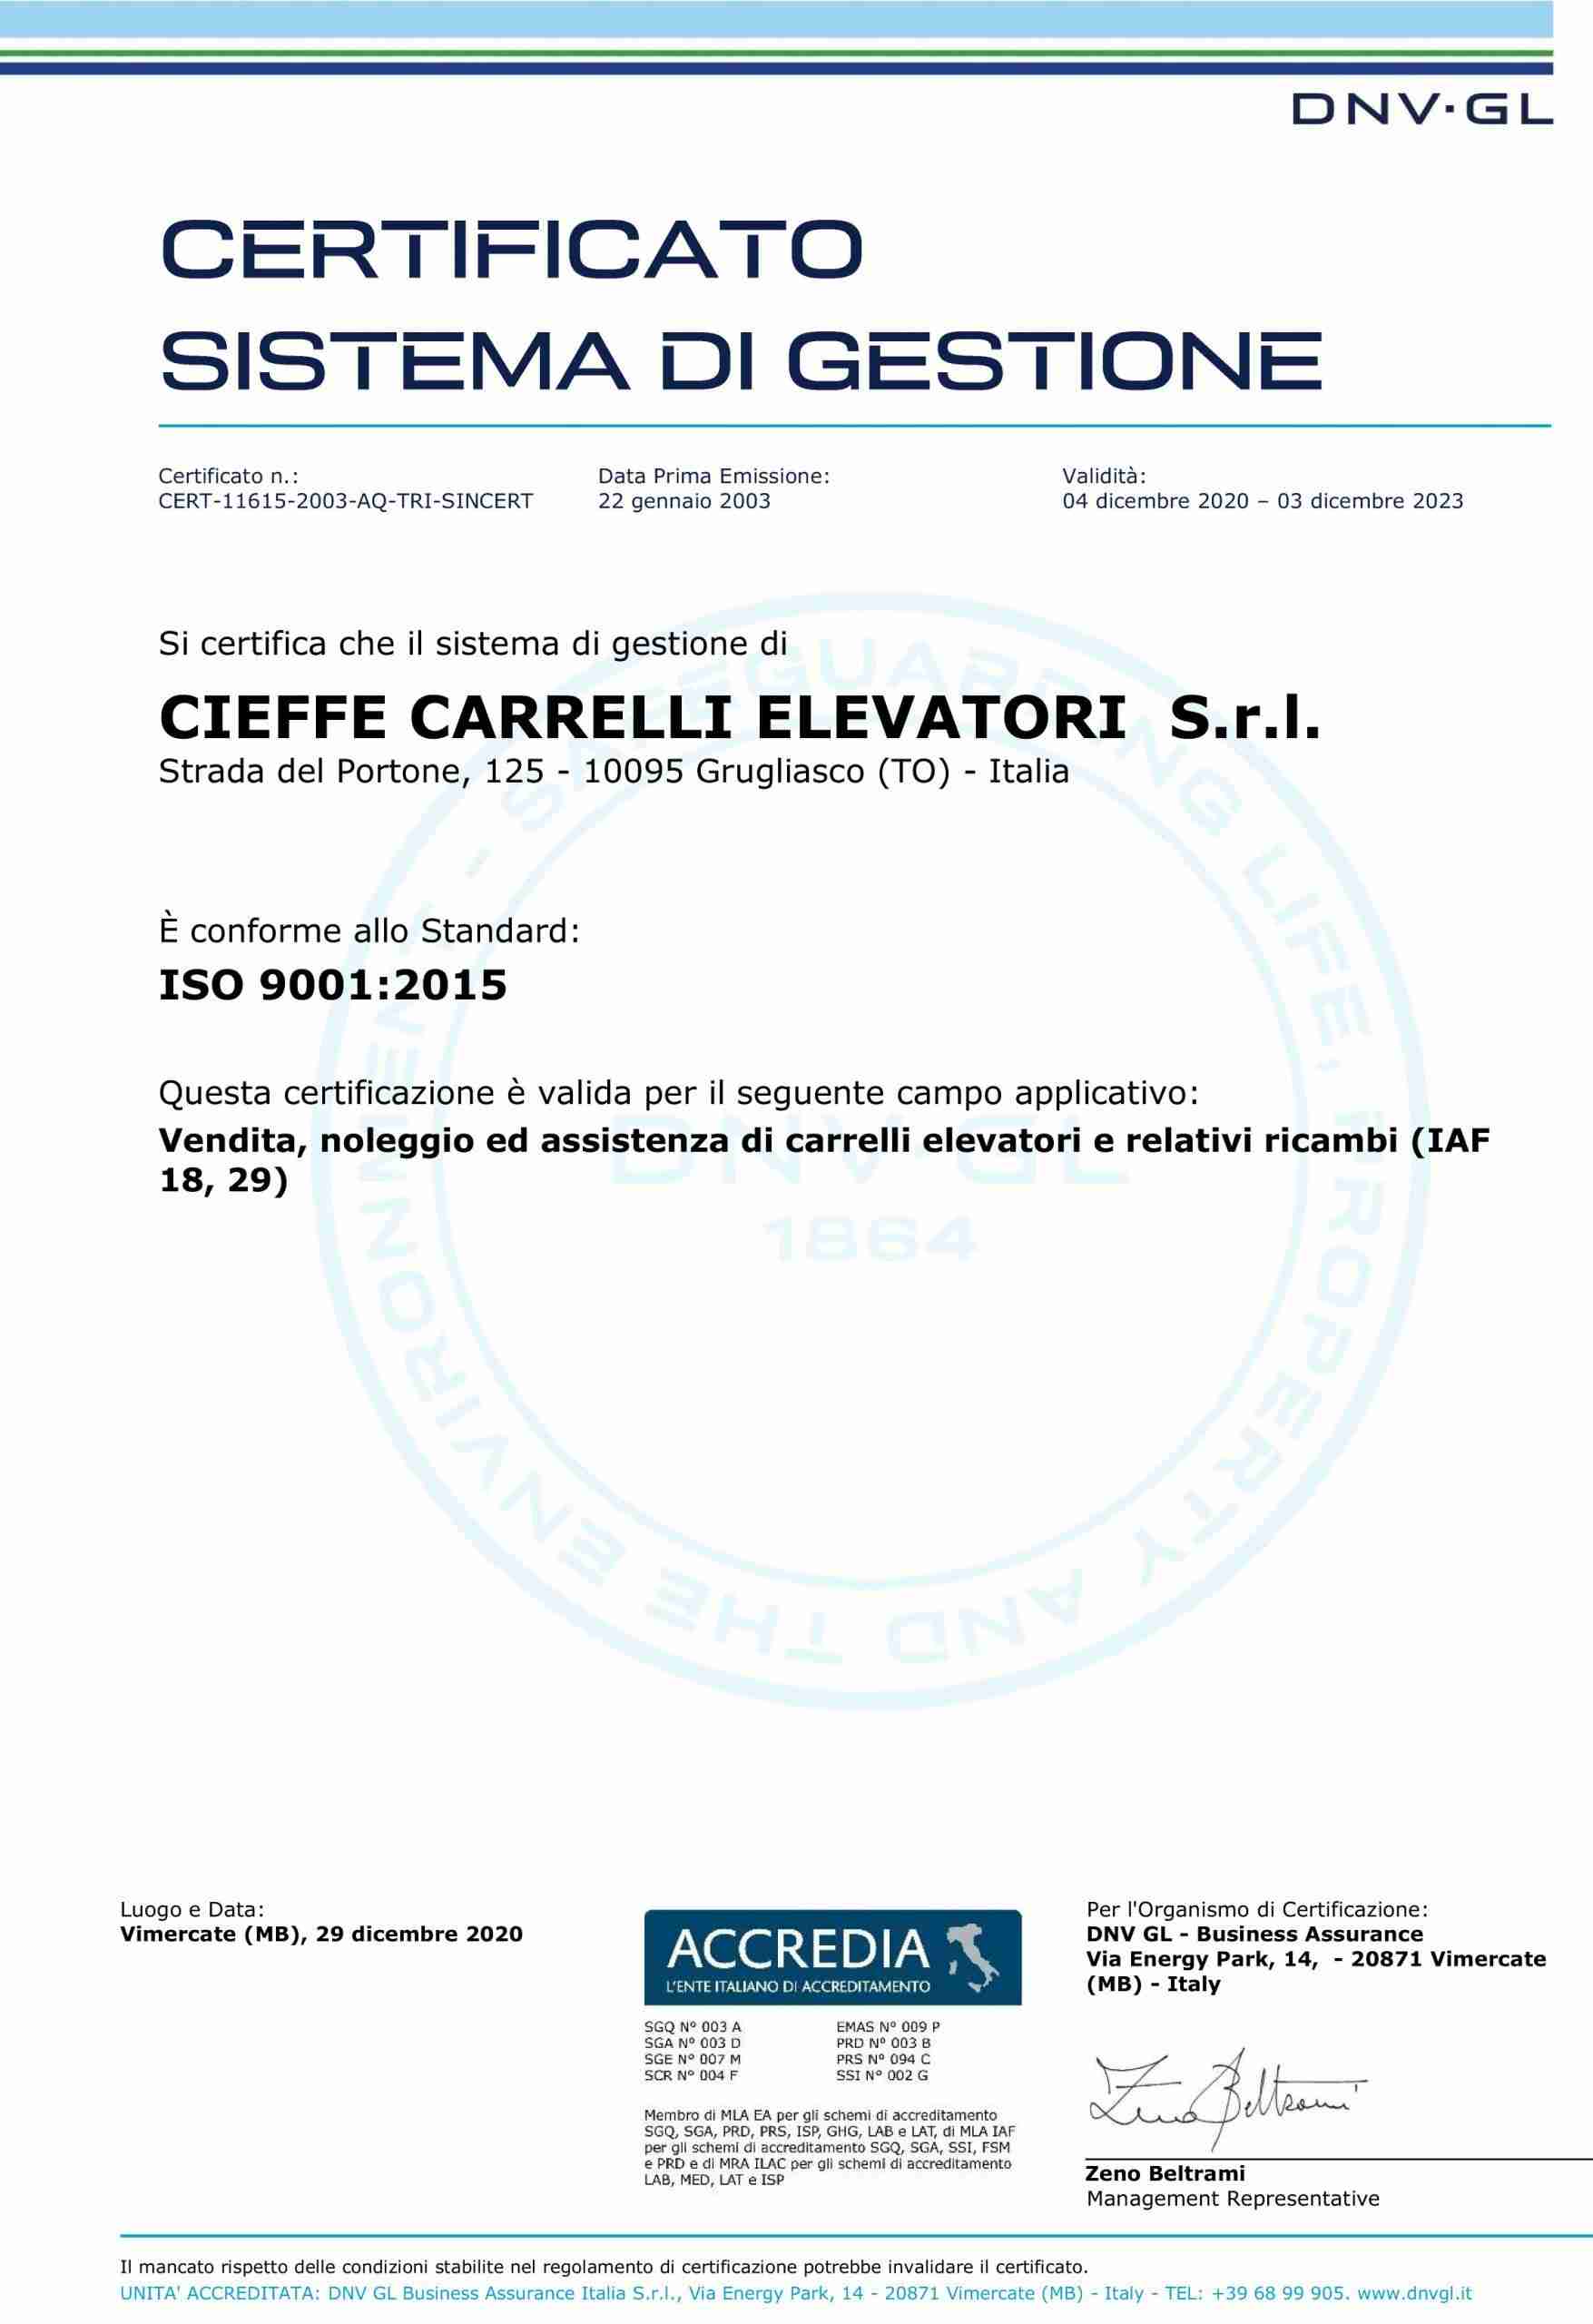 dvn-gl certificazione iso 9001/2015 - cieffe carrelli